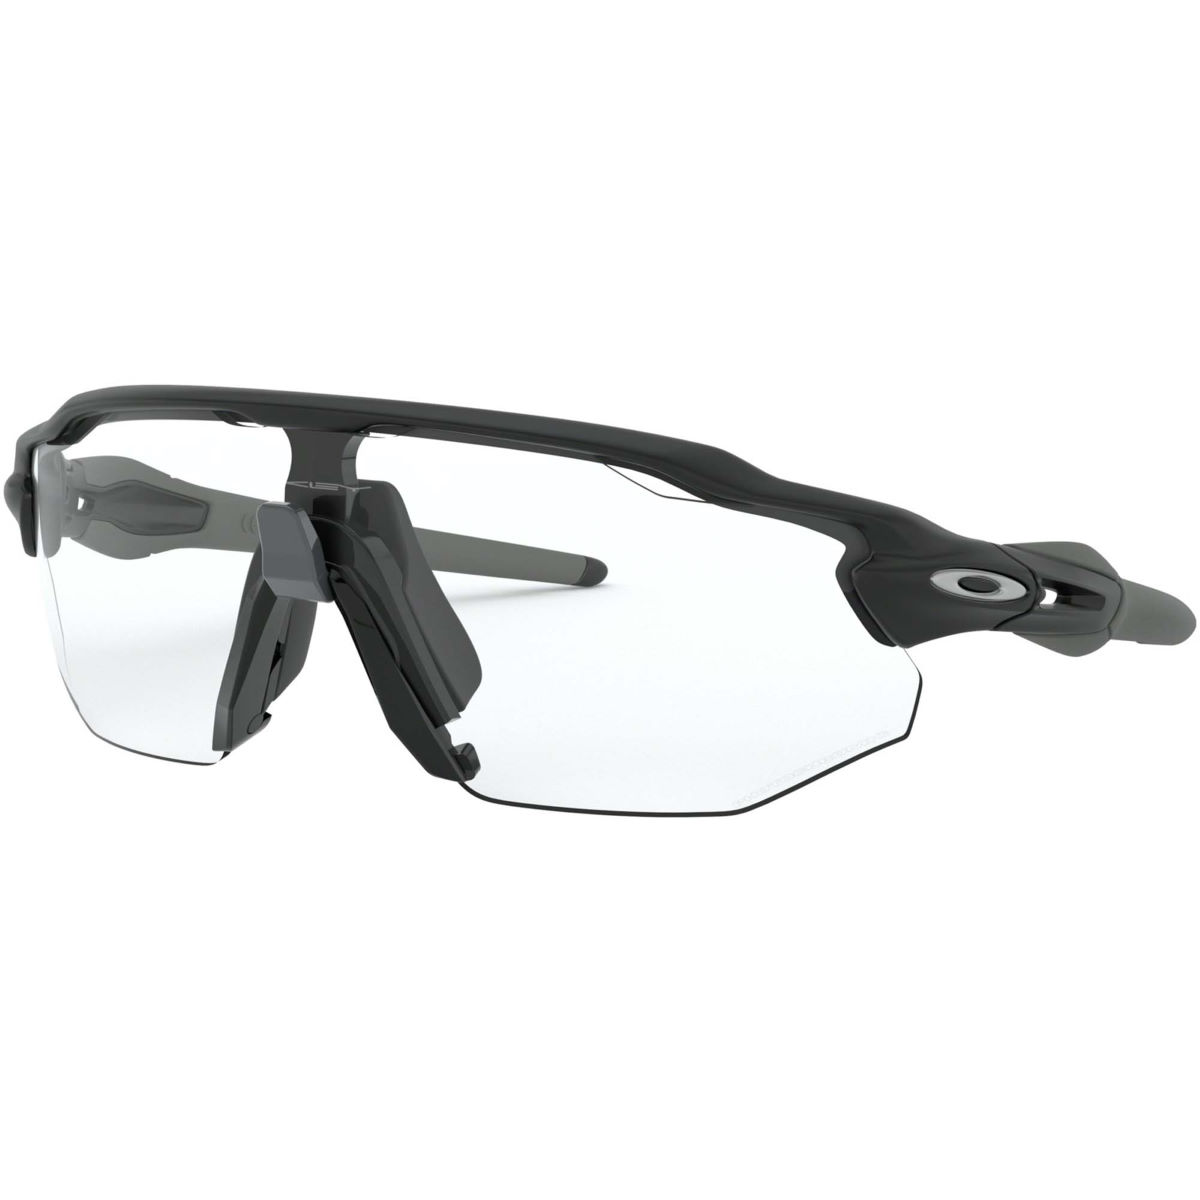 Gafas de sol Oakley Radar EV Advancer (negro, lentes fotocromáticas) - Gafas de sol